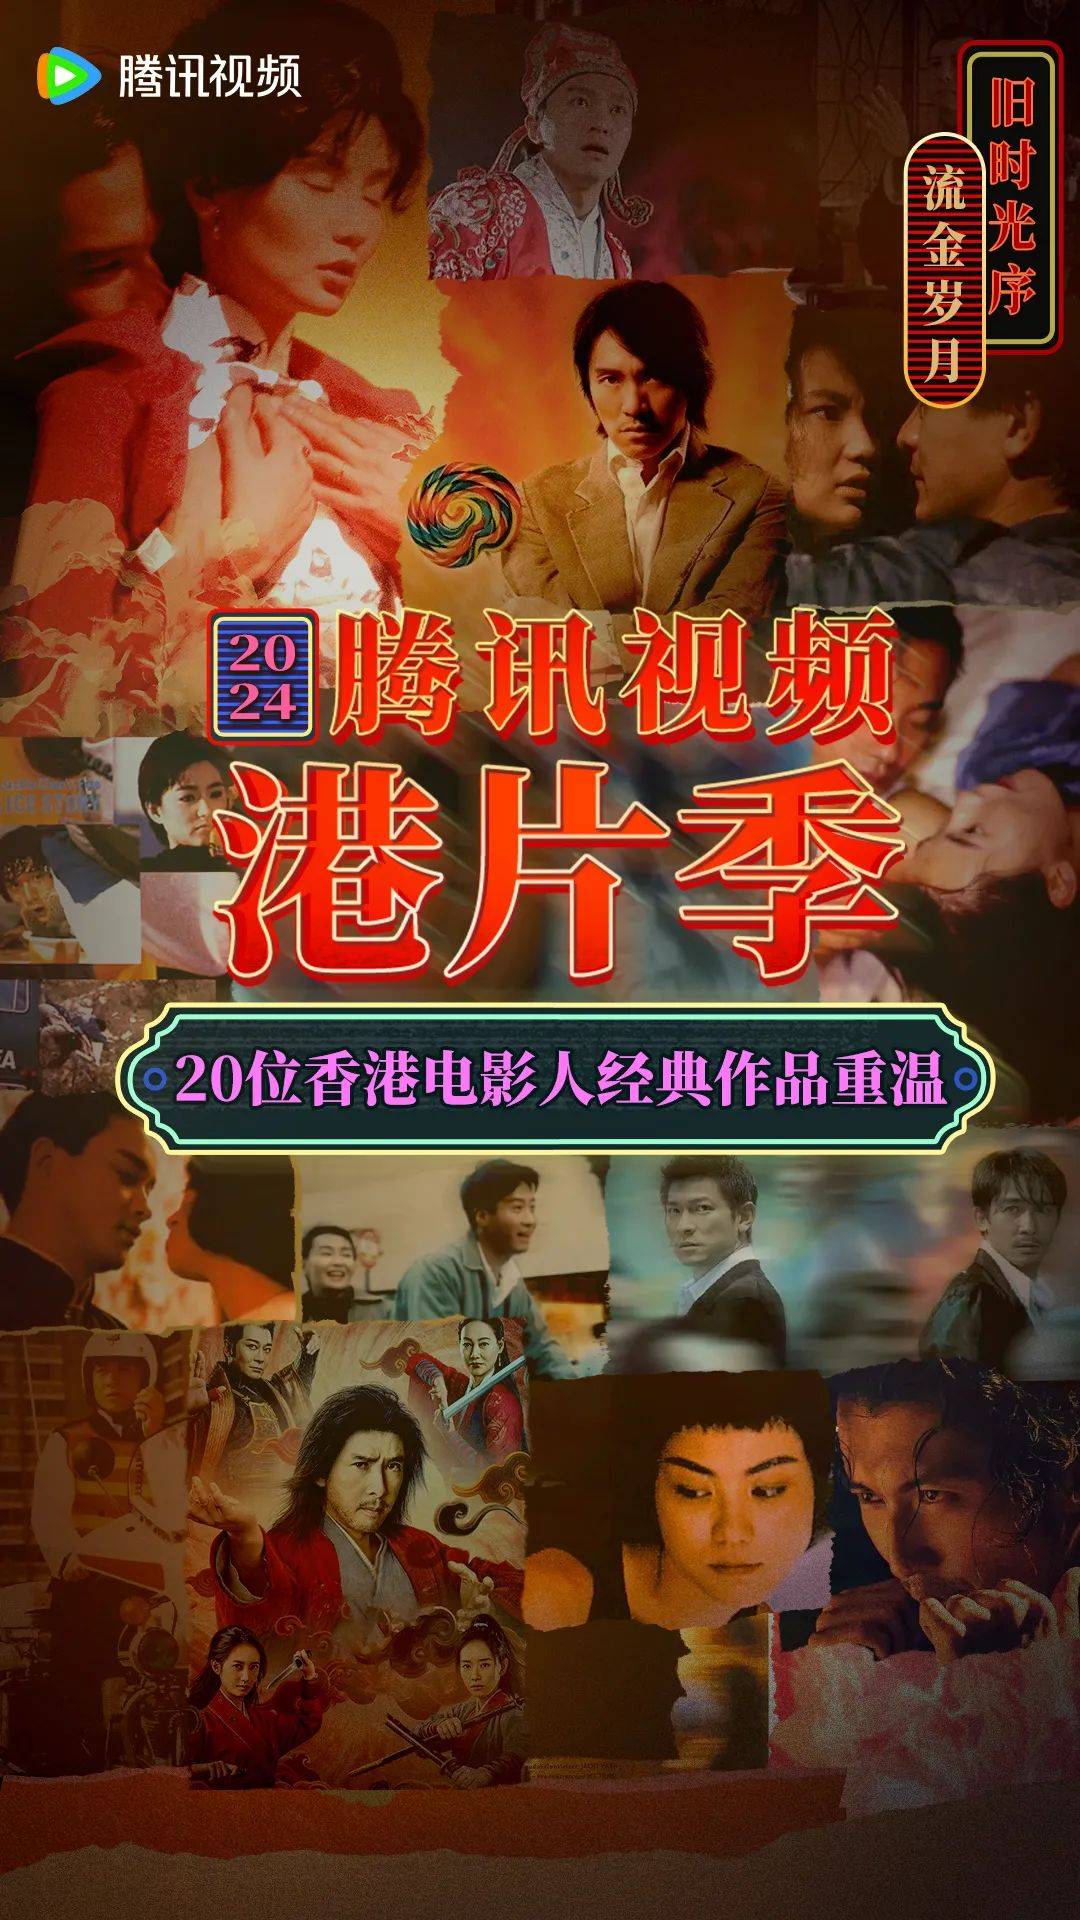 第33届香港电影金像奖图片